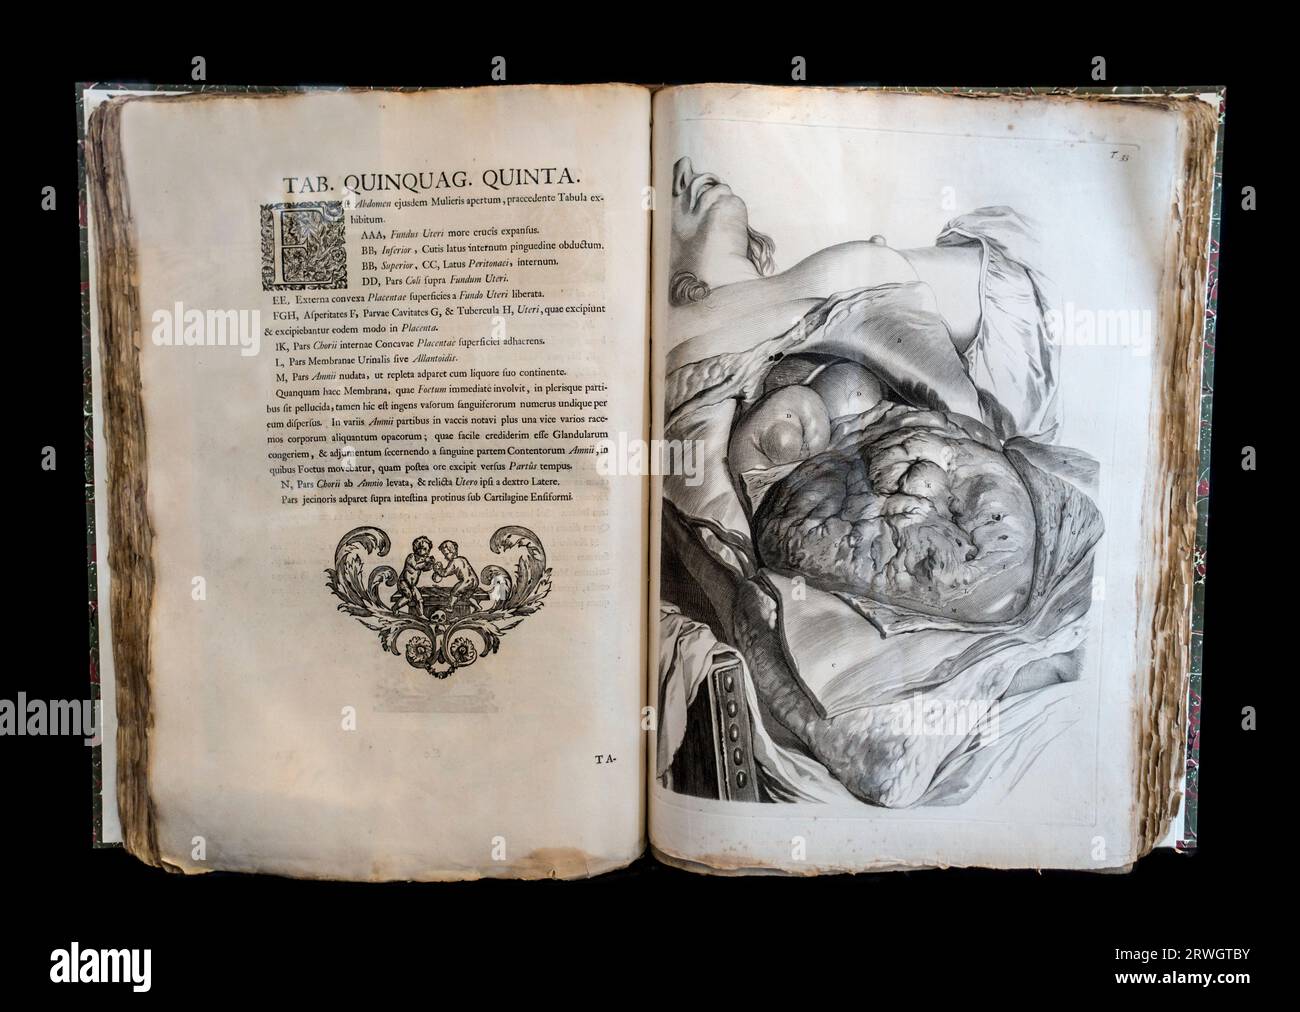 Antiguo libro abierto de anatomía Anatomia corporum Humanorum Centum et Viginti Tabulis por William Cowper, cirujano y anatomista inglés del siglo XVII Foto de stock